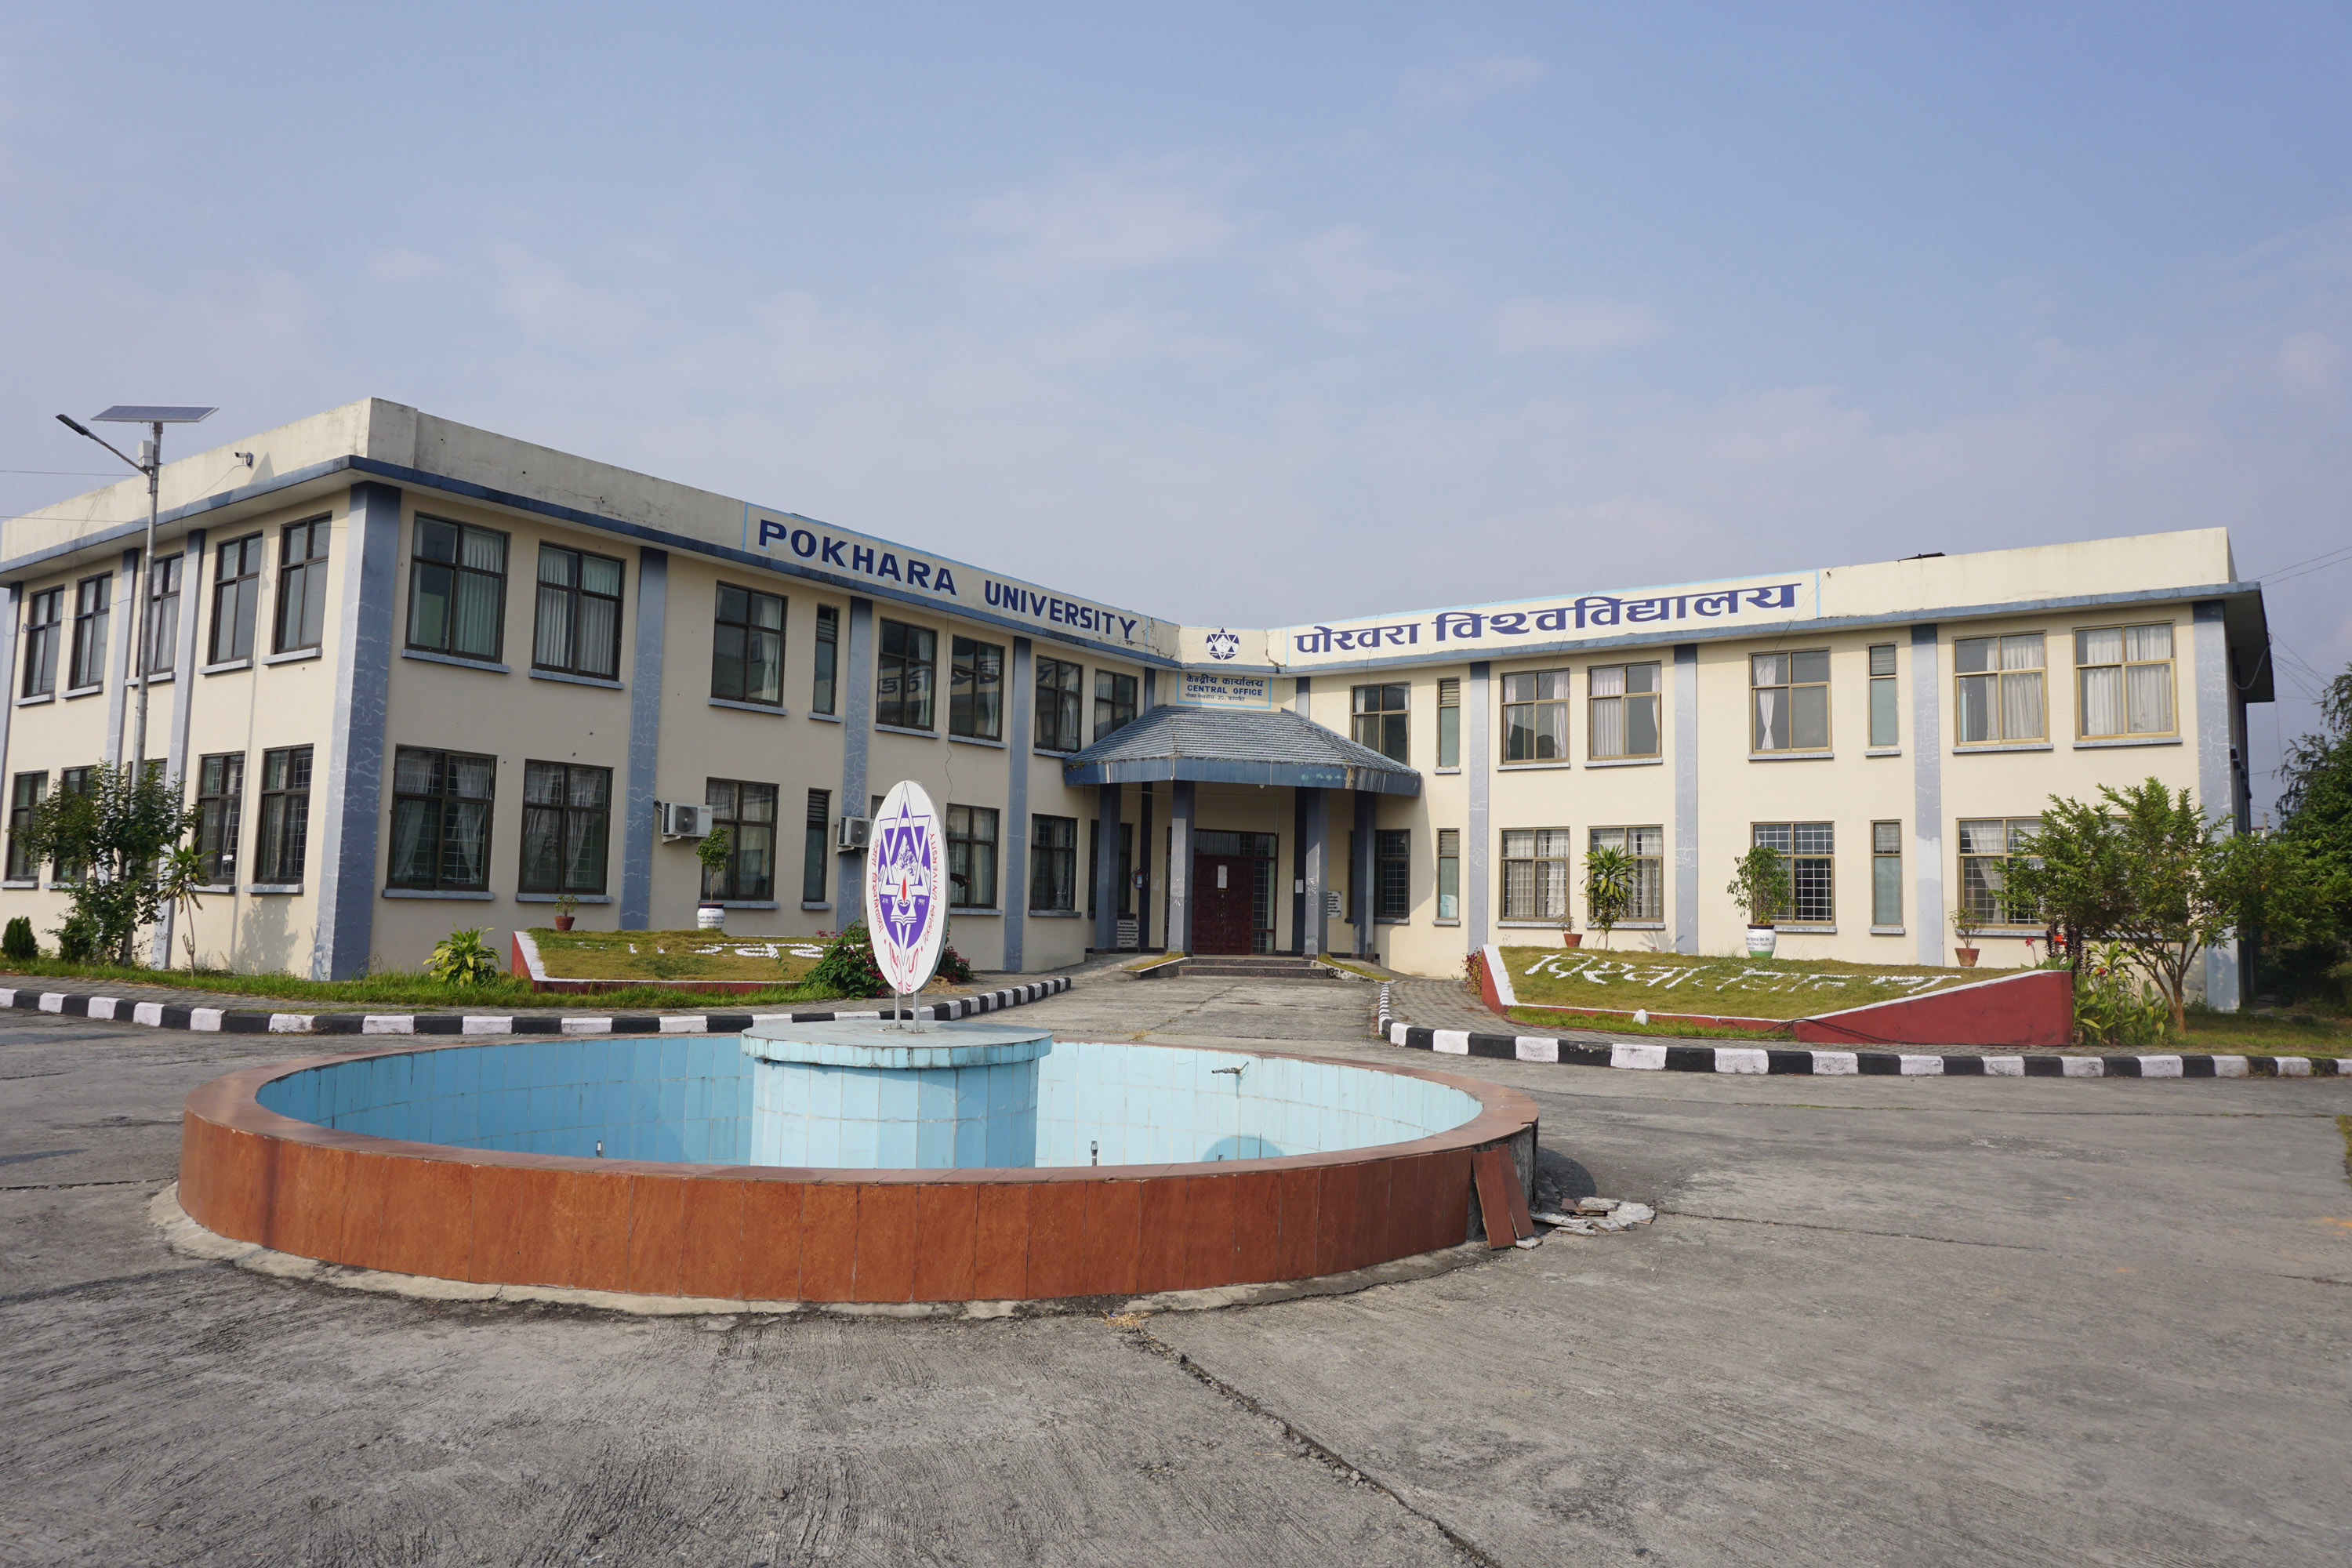 Pokhara University (PU)